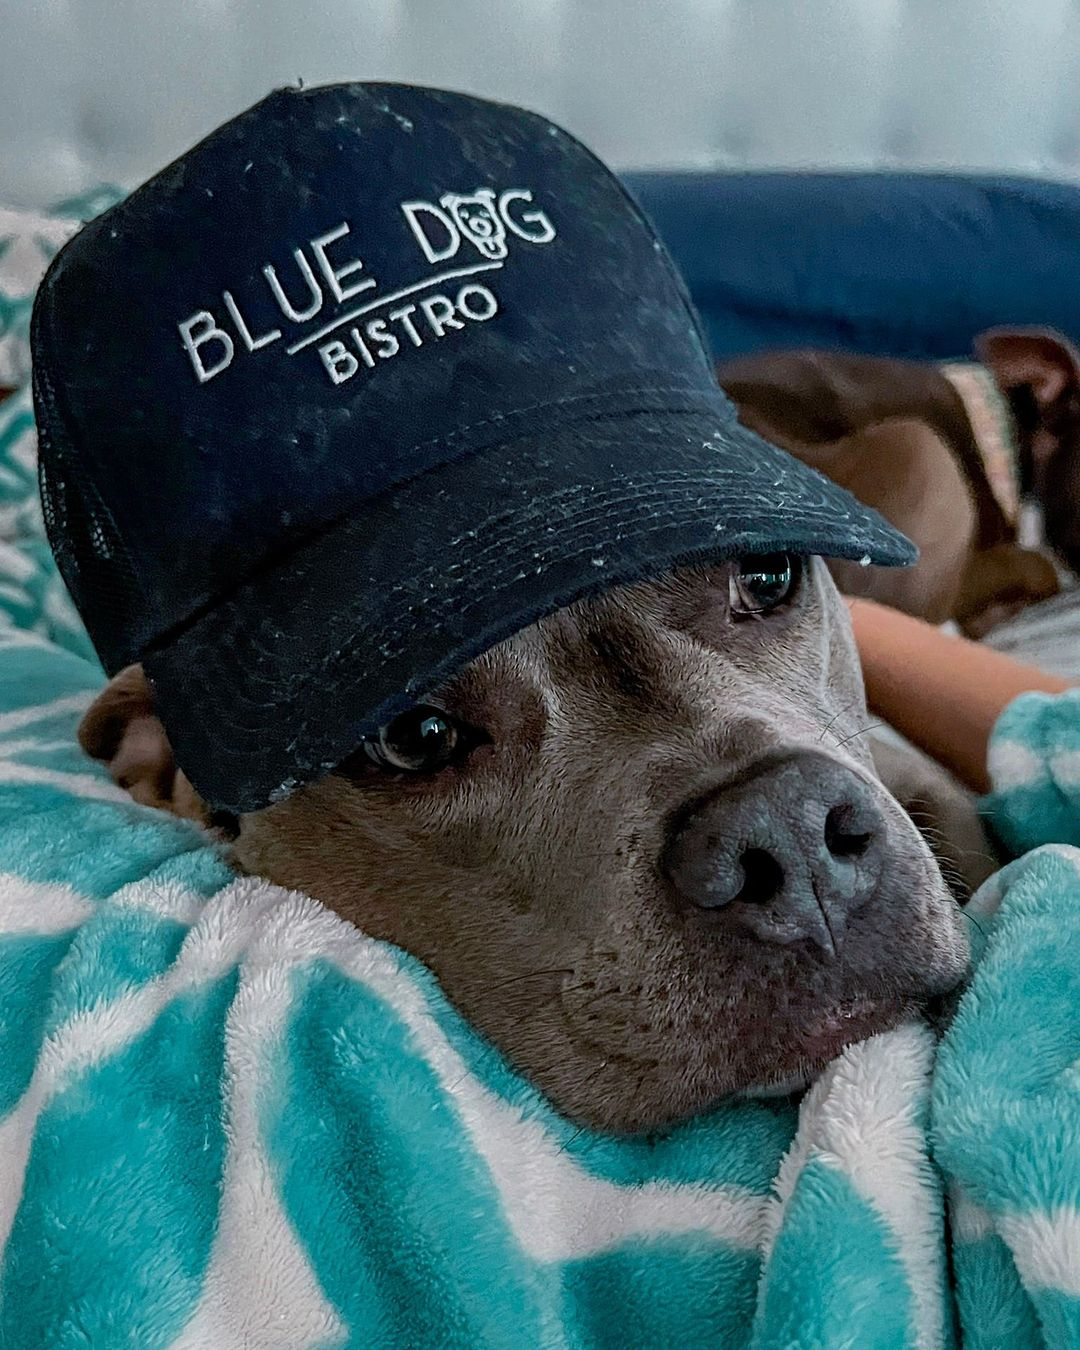 blue dog bistro